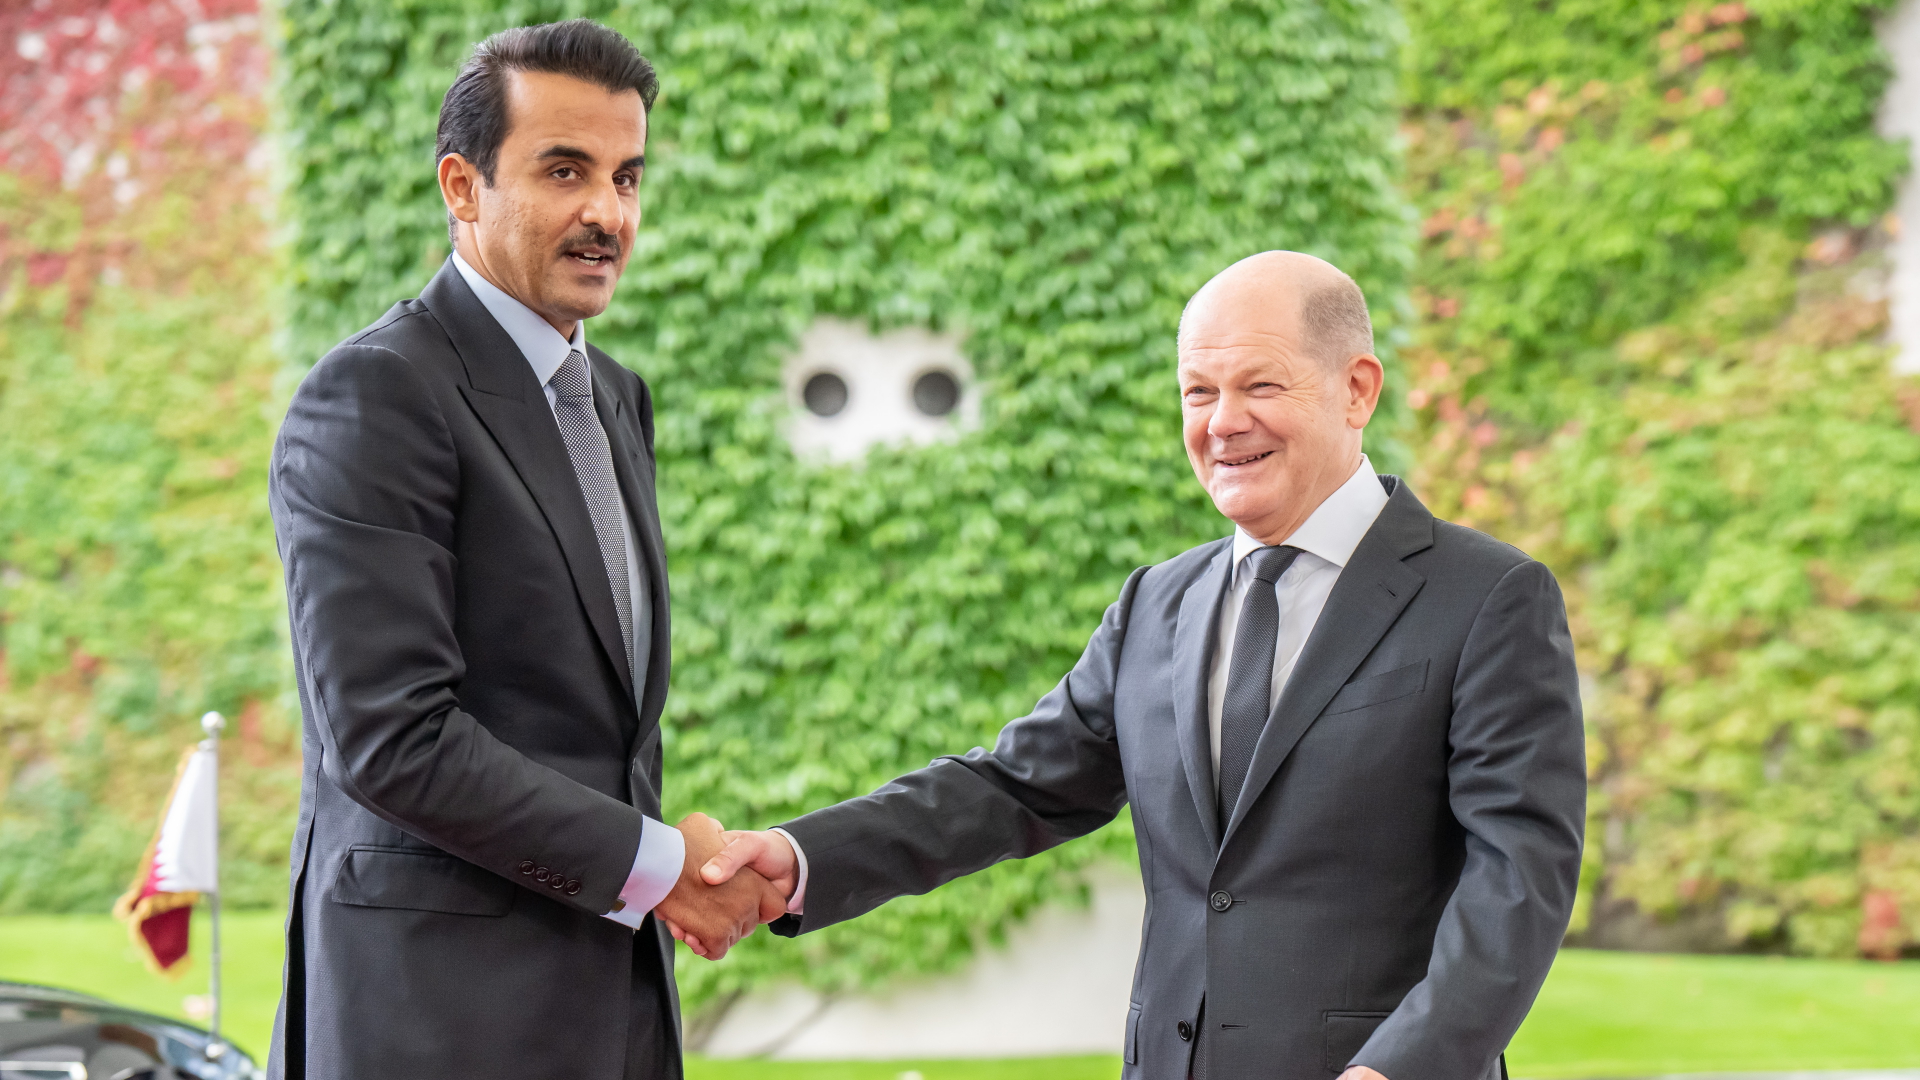 Bundeskanzler Olaf Scholz begrüsst Scheich Tamim bin Hamad bin Khalifa Al Thani, den Emir von Katar, am Kanzleramt